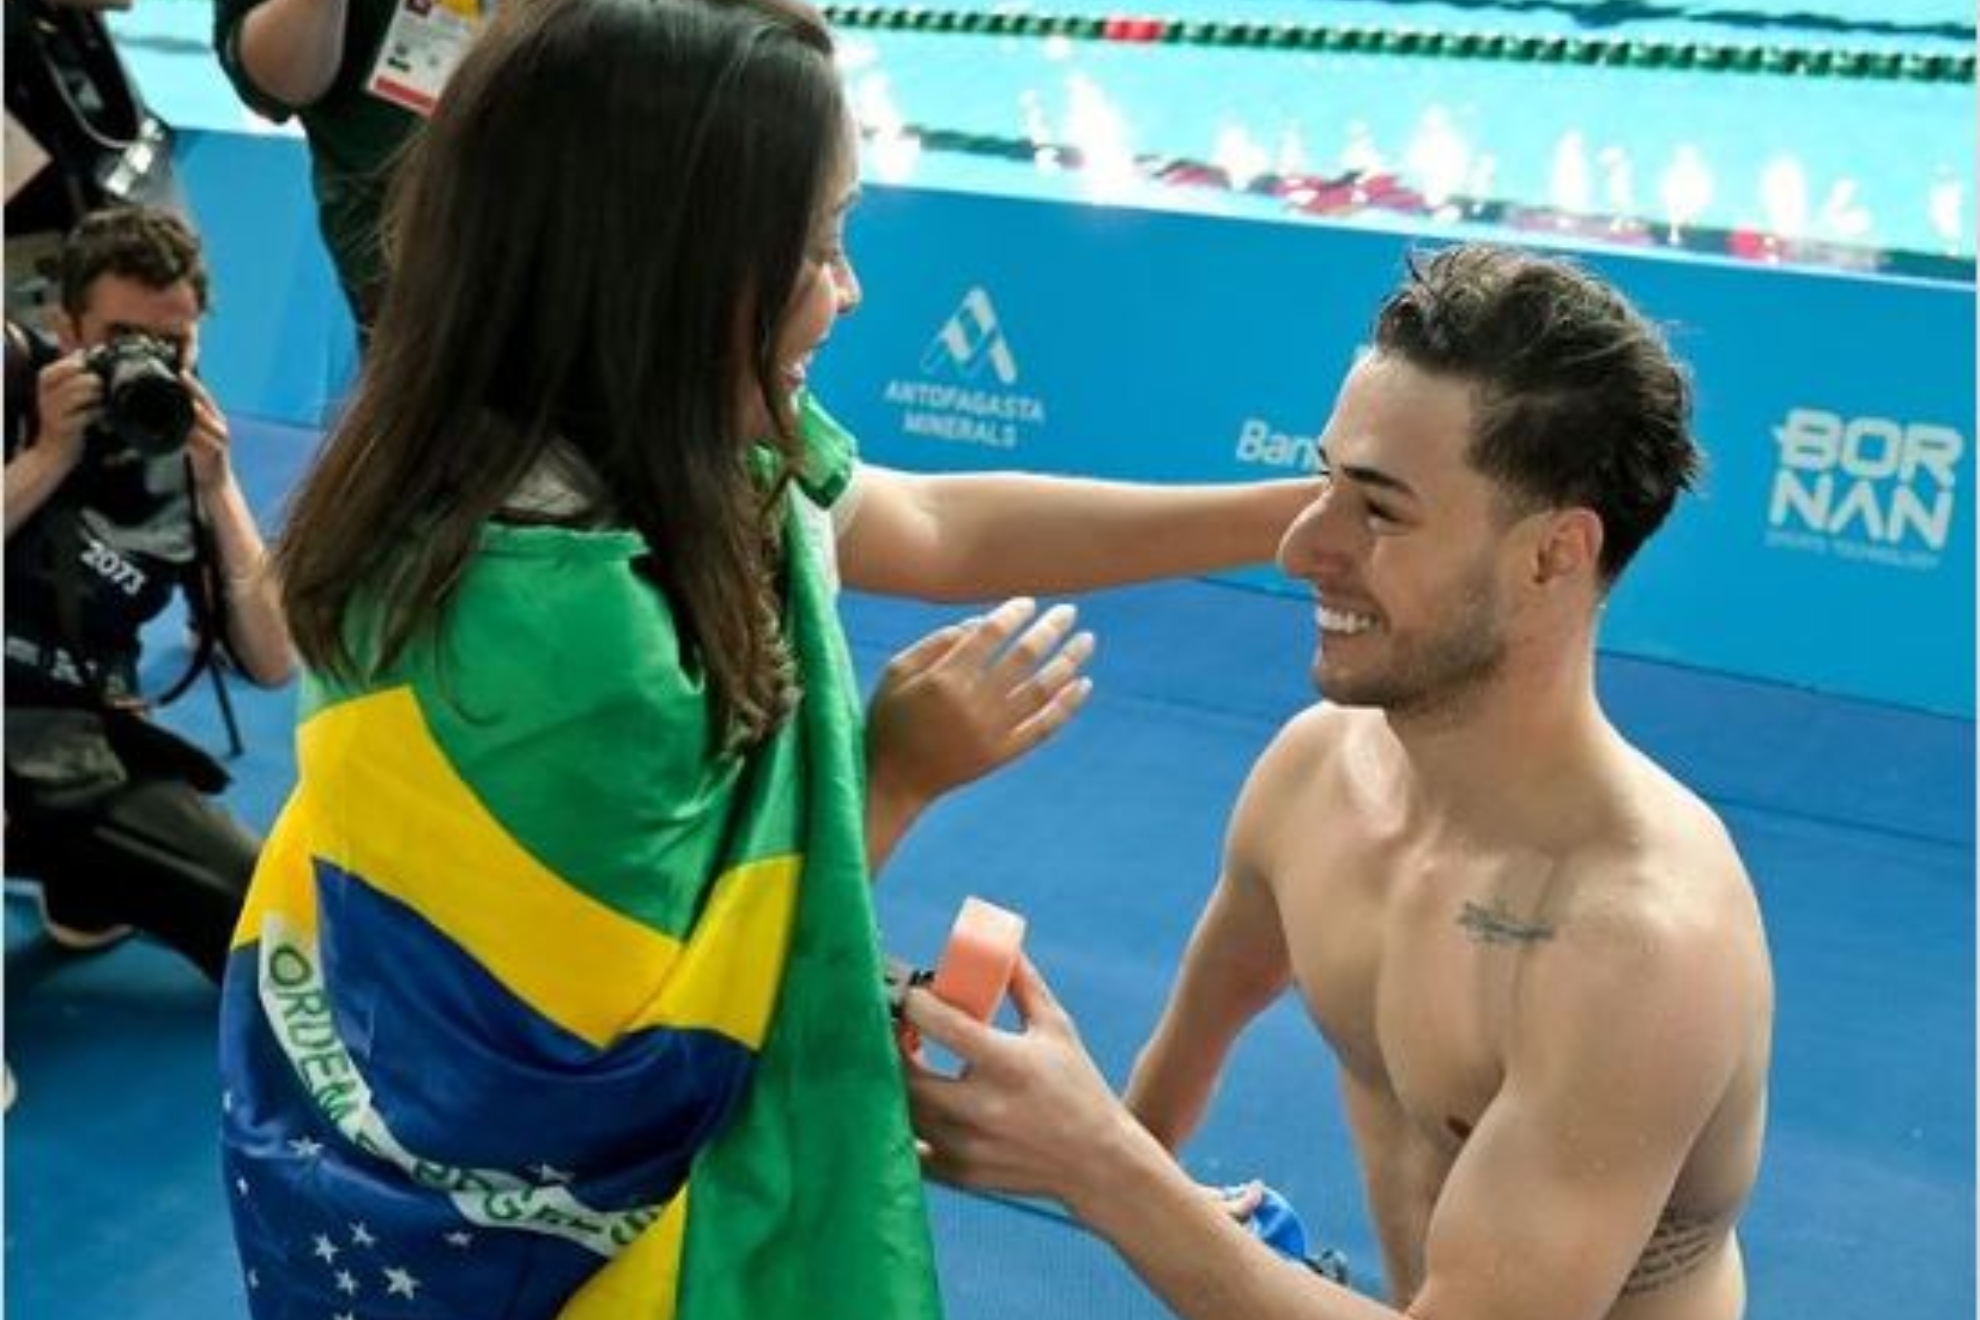 Le pide matrimonio a su novia en la piscina... tras ganar el bronce en los Parapanamericanos